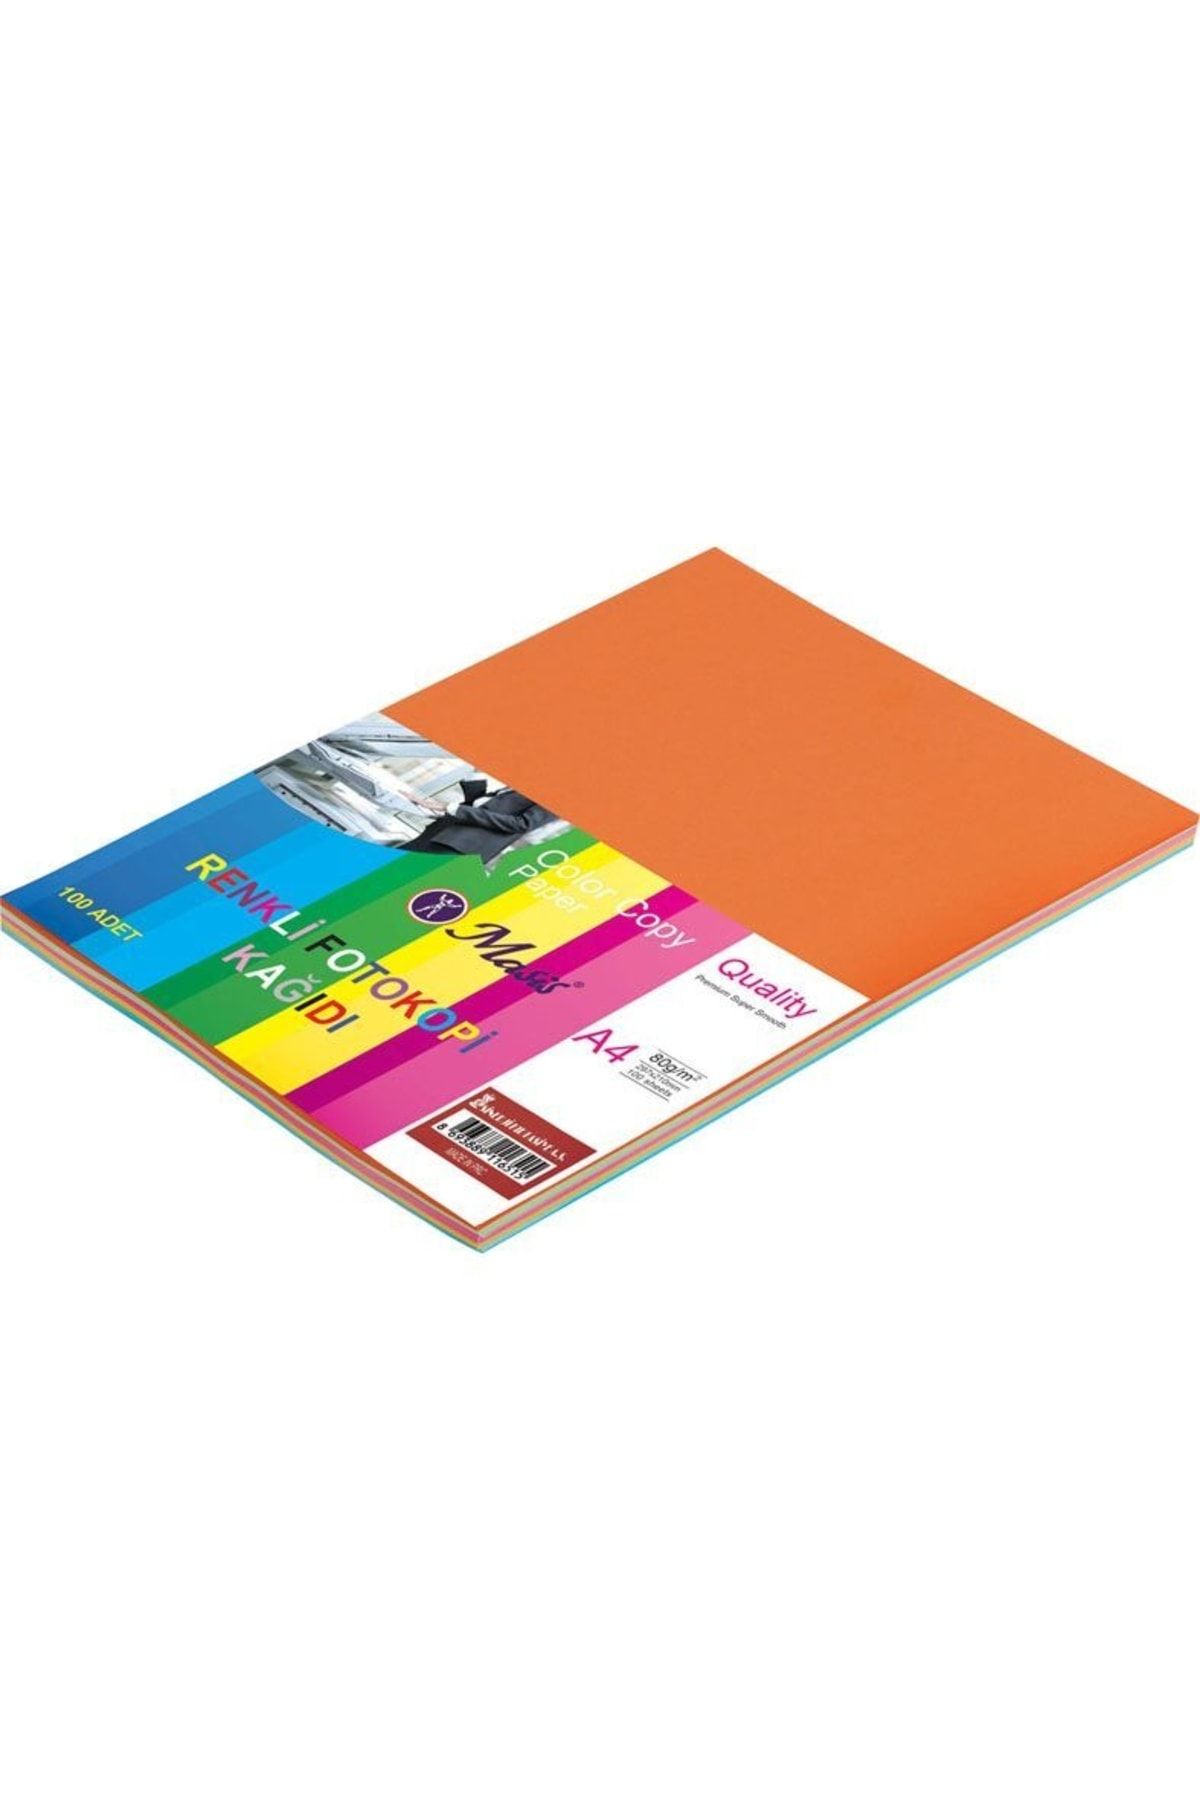 Bigpoint Masis Renkli Fotokopi Kağıdı 100 Lü 5 Renk